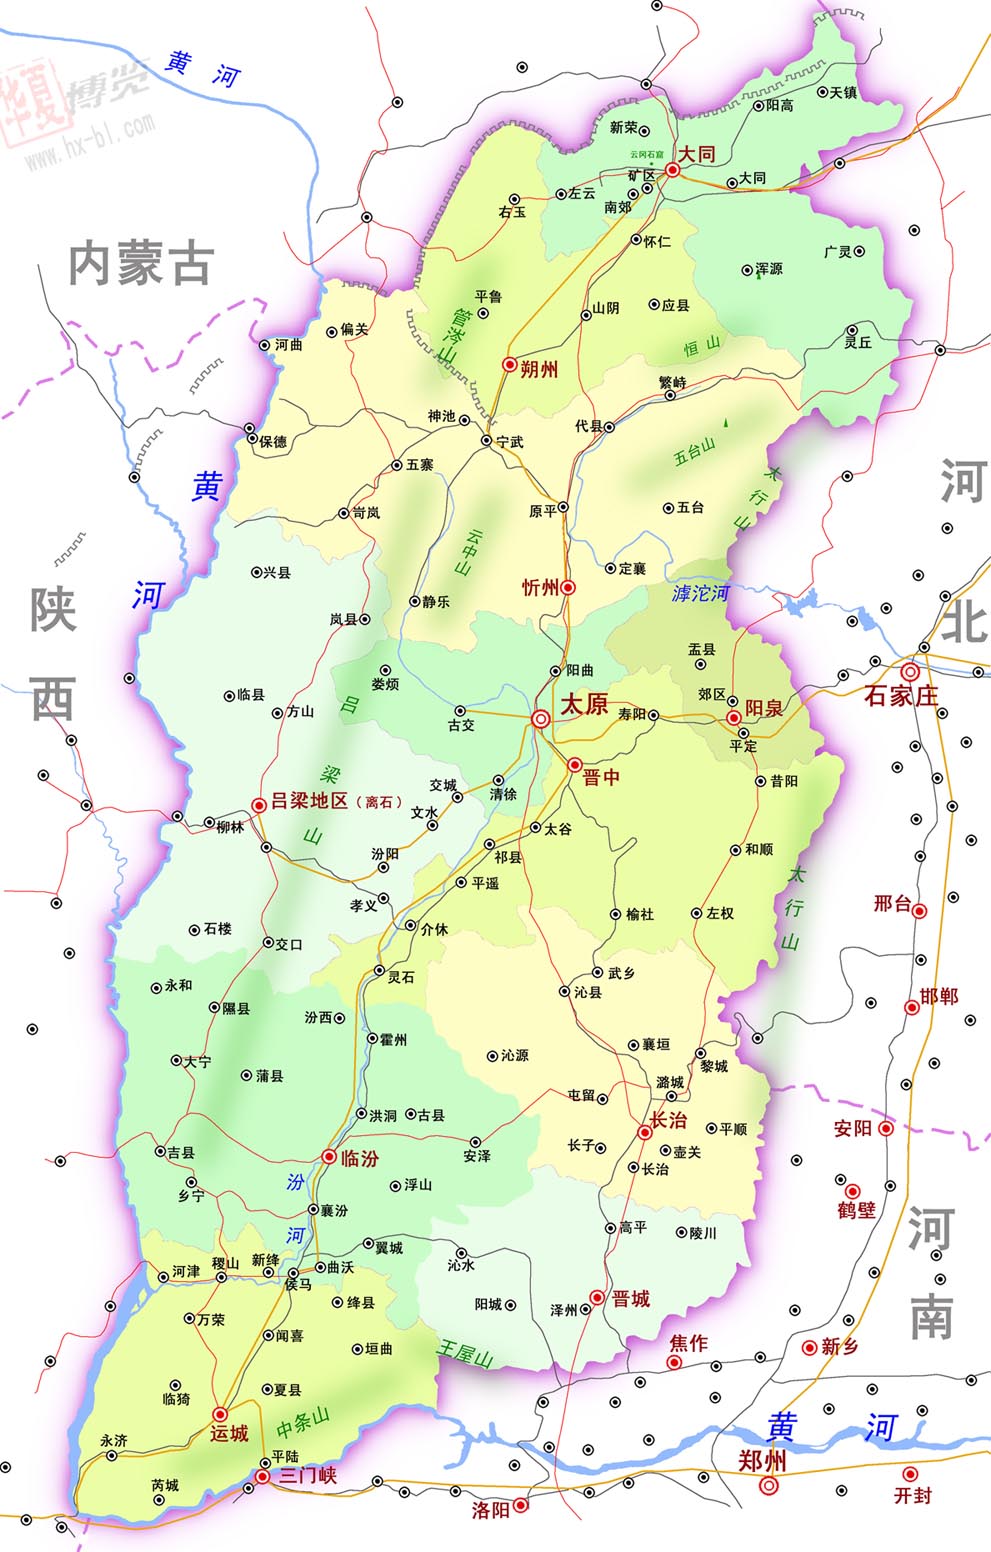 山西省地图图片; 山西旅游地图全图 山西省地图全图|山西地图全图_37图片